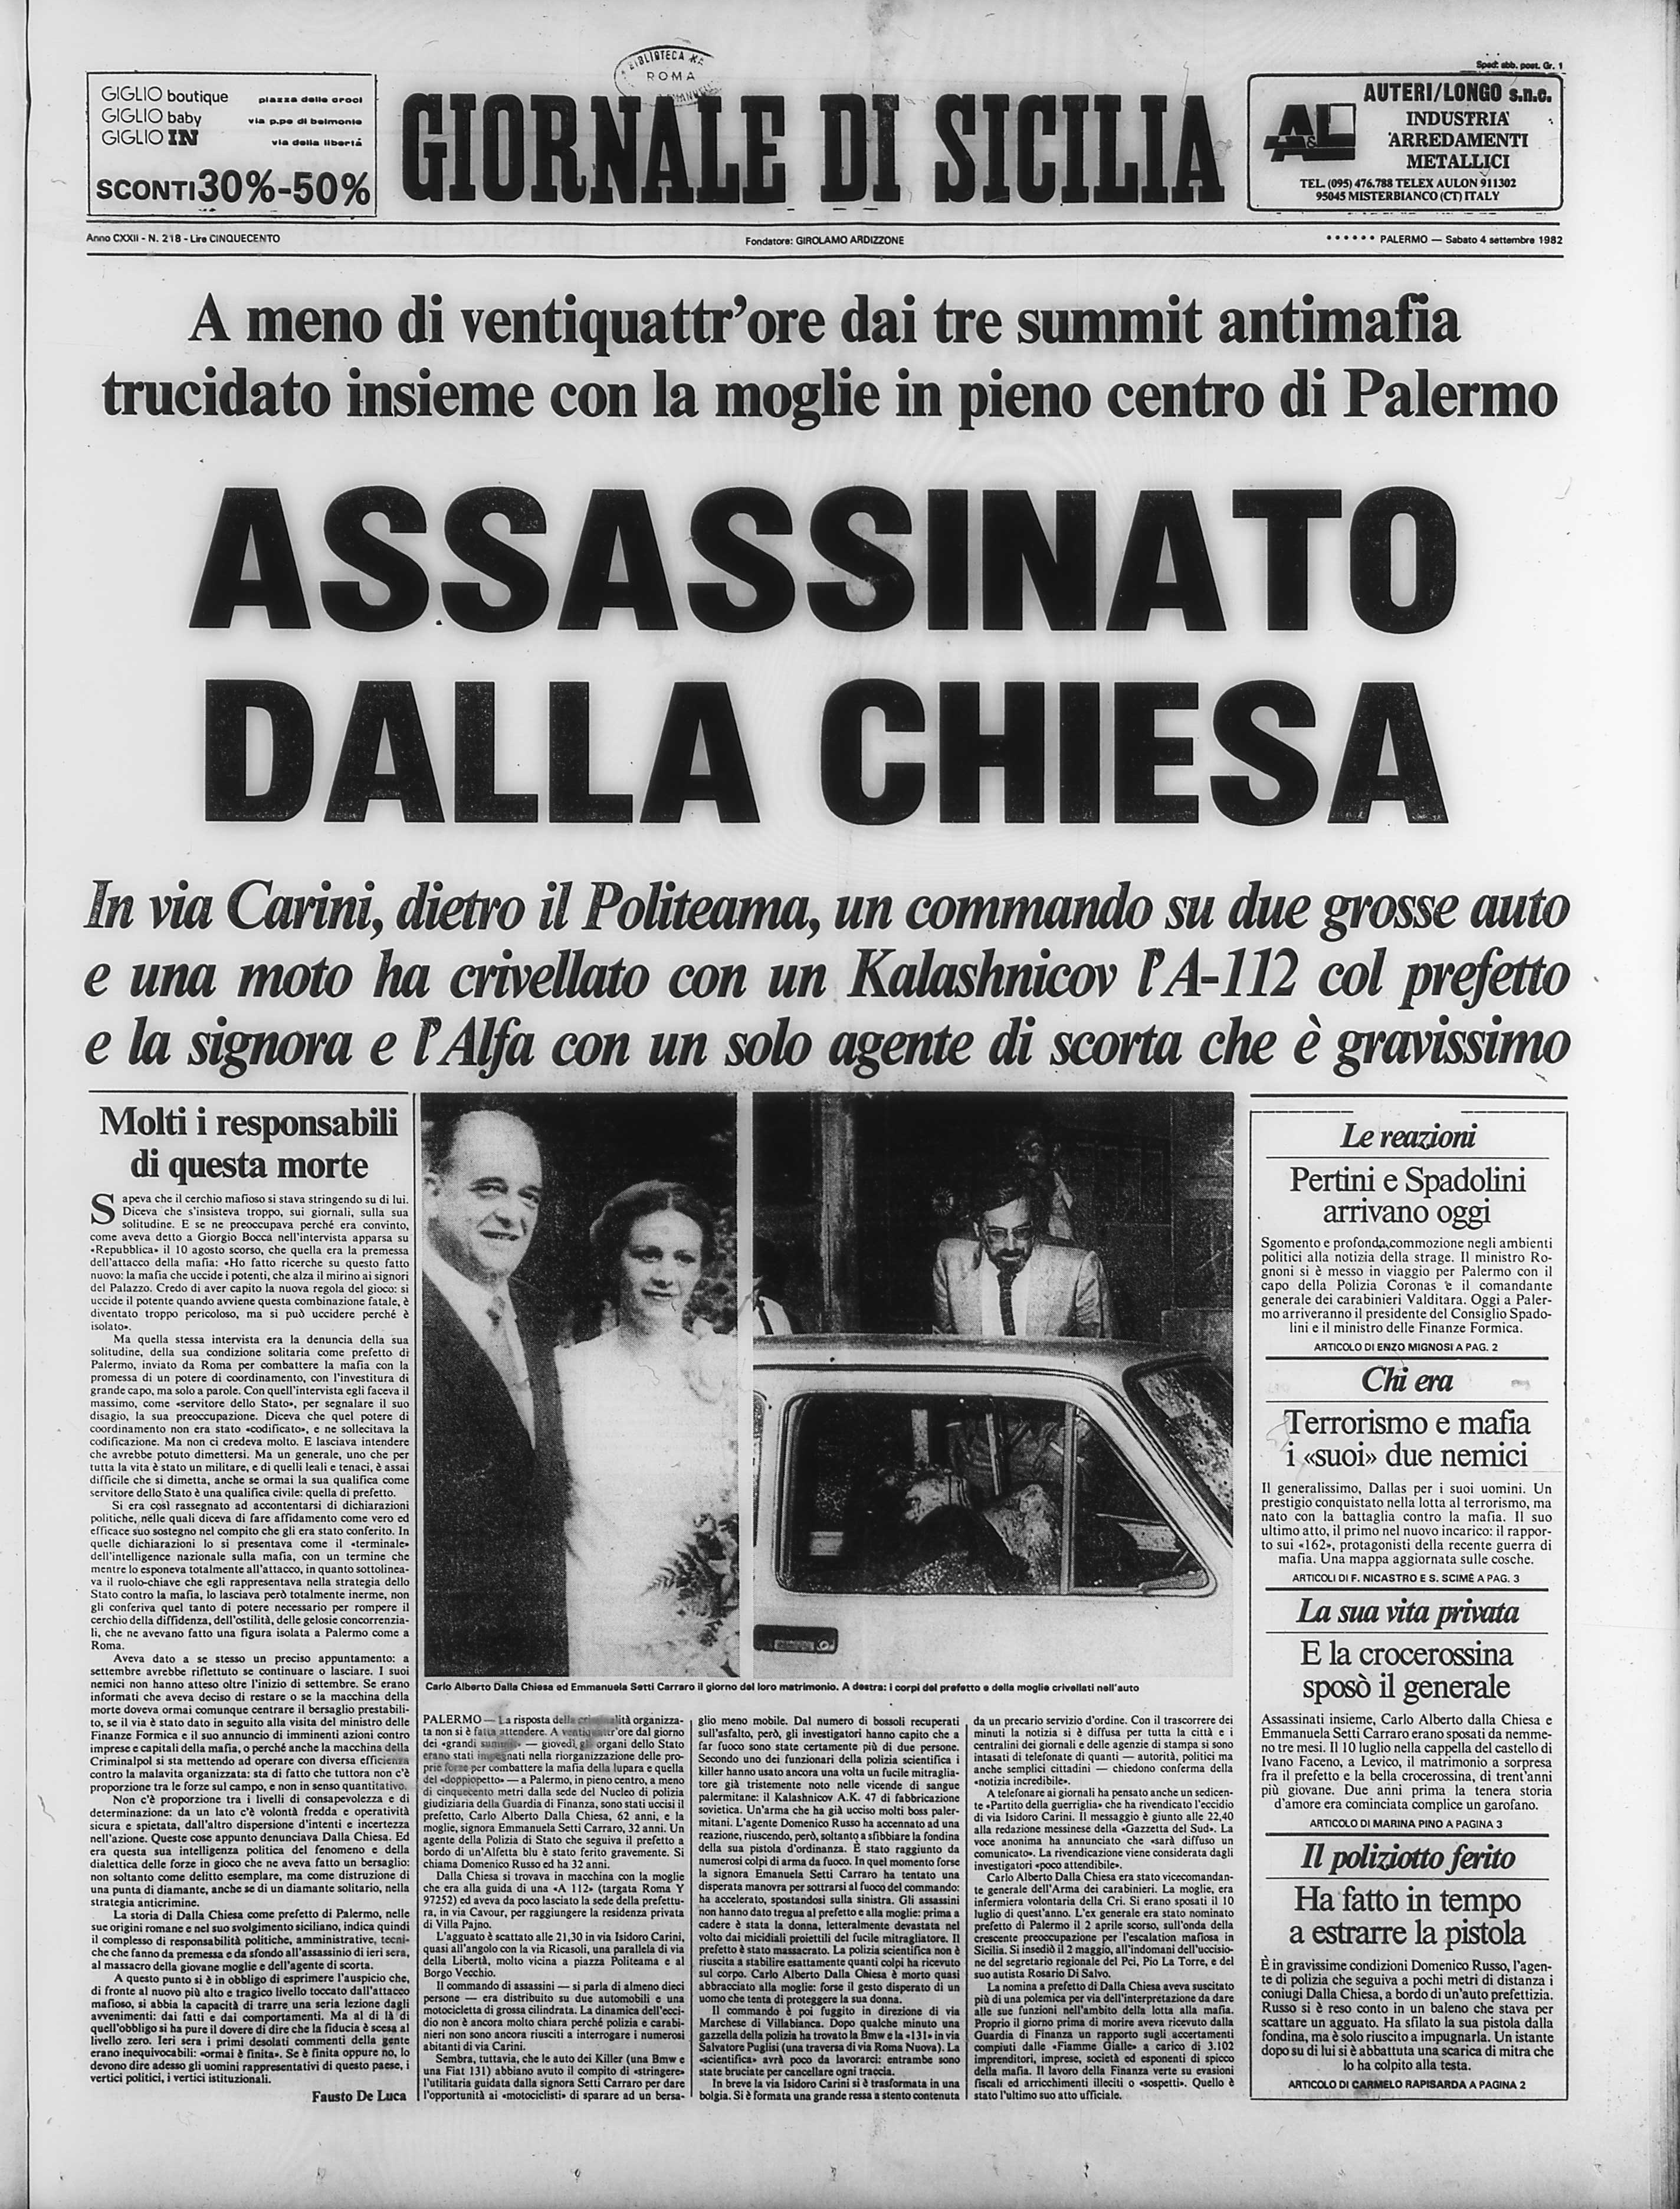 fig4-giornale-di-sicilia-04-09-1982-p-1_1418802540526-jpg